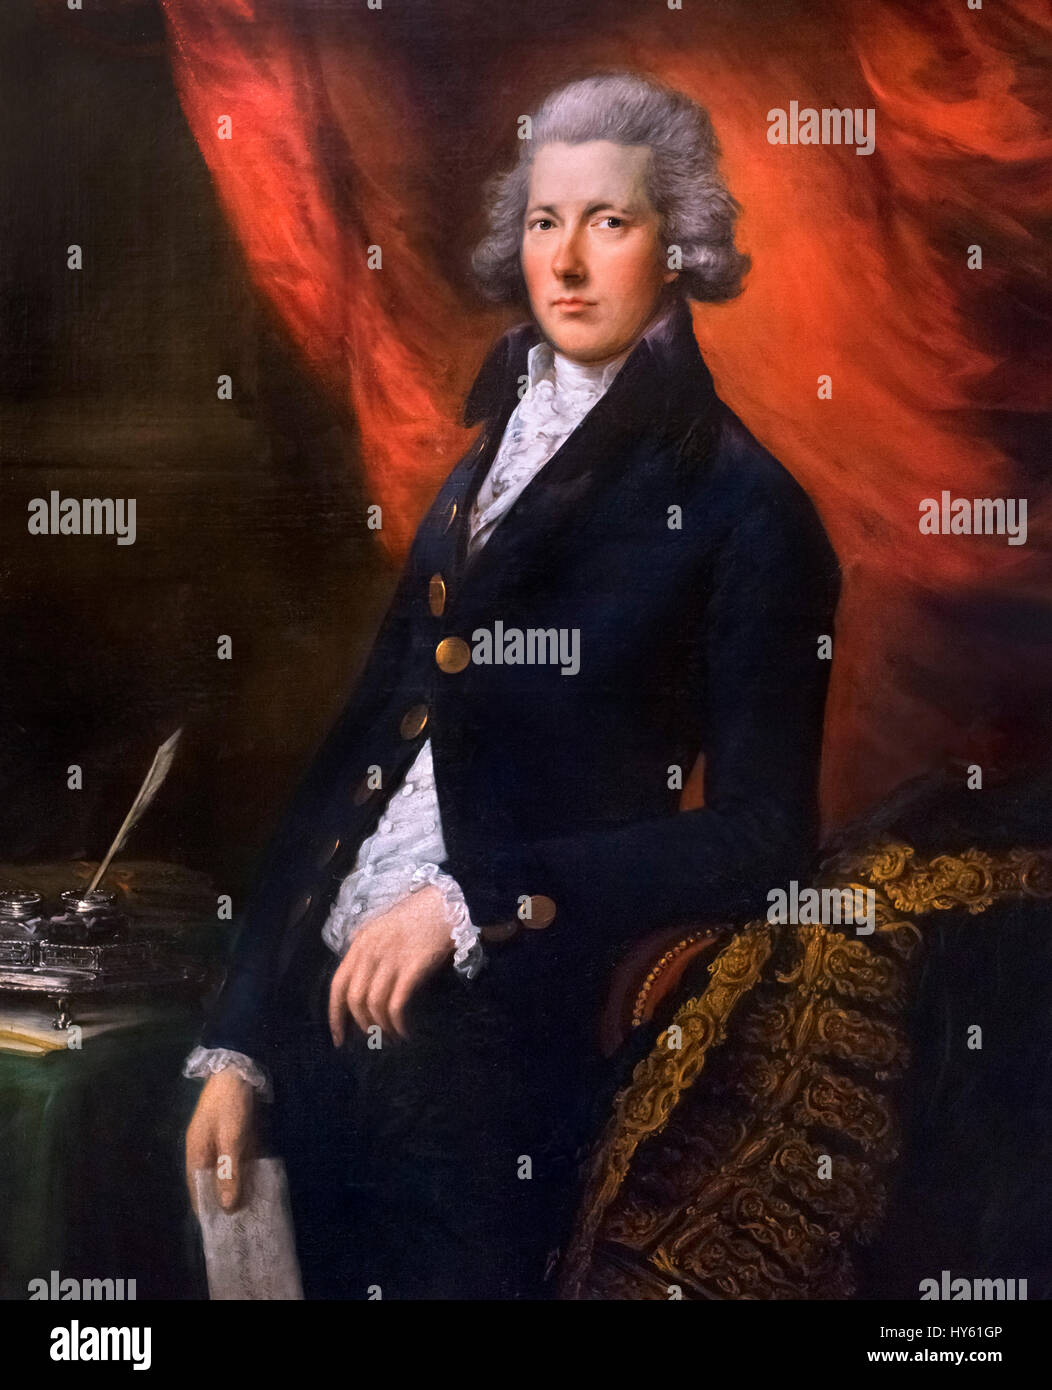 William Pitt der jüngere, britischer Premierminister am Ende des 18. und Anfang des 19. Jahrhunderts. Porträt von Thomas Gainsborough, c.1787-90 Stockfoto